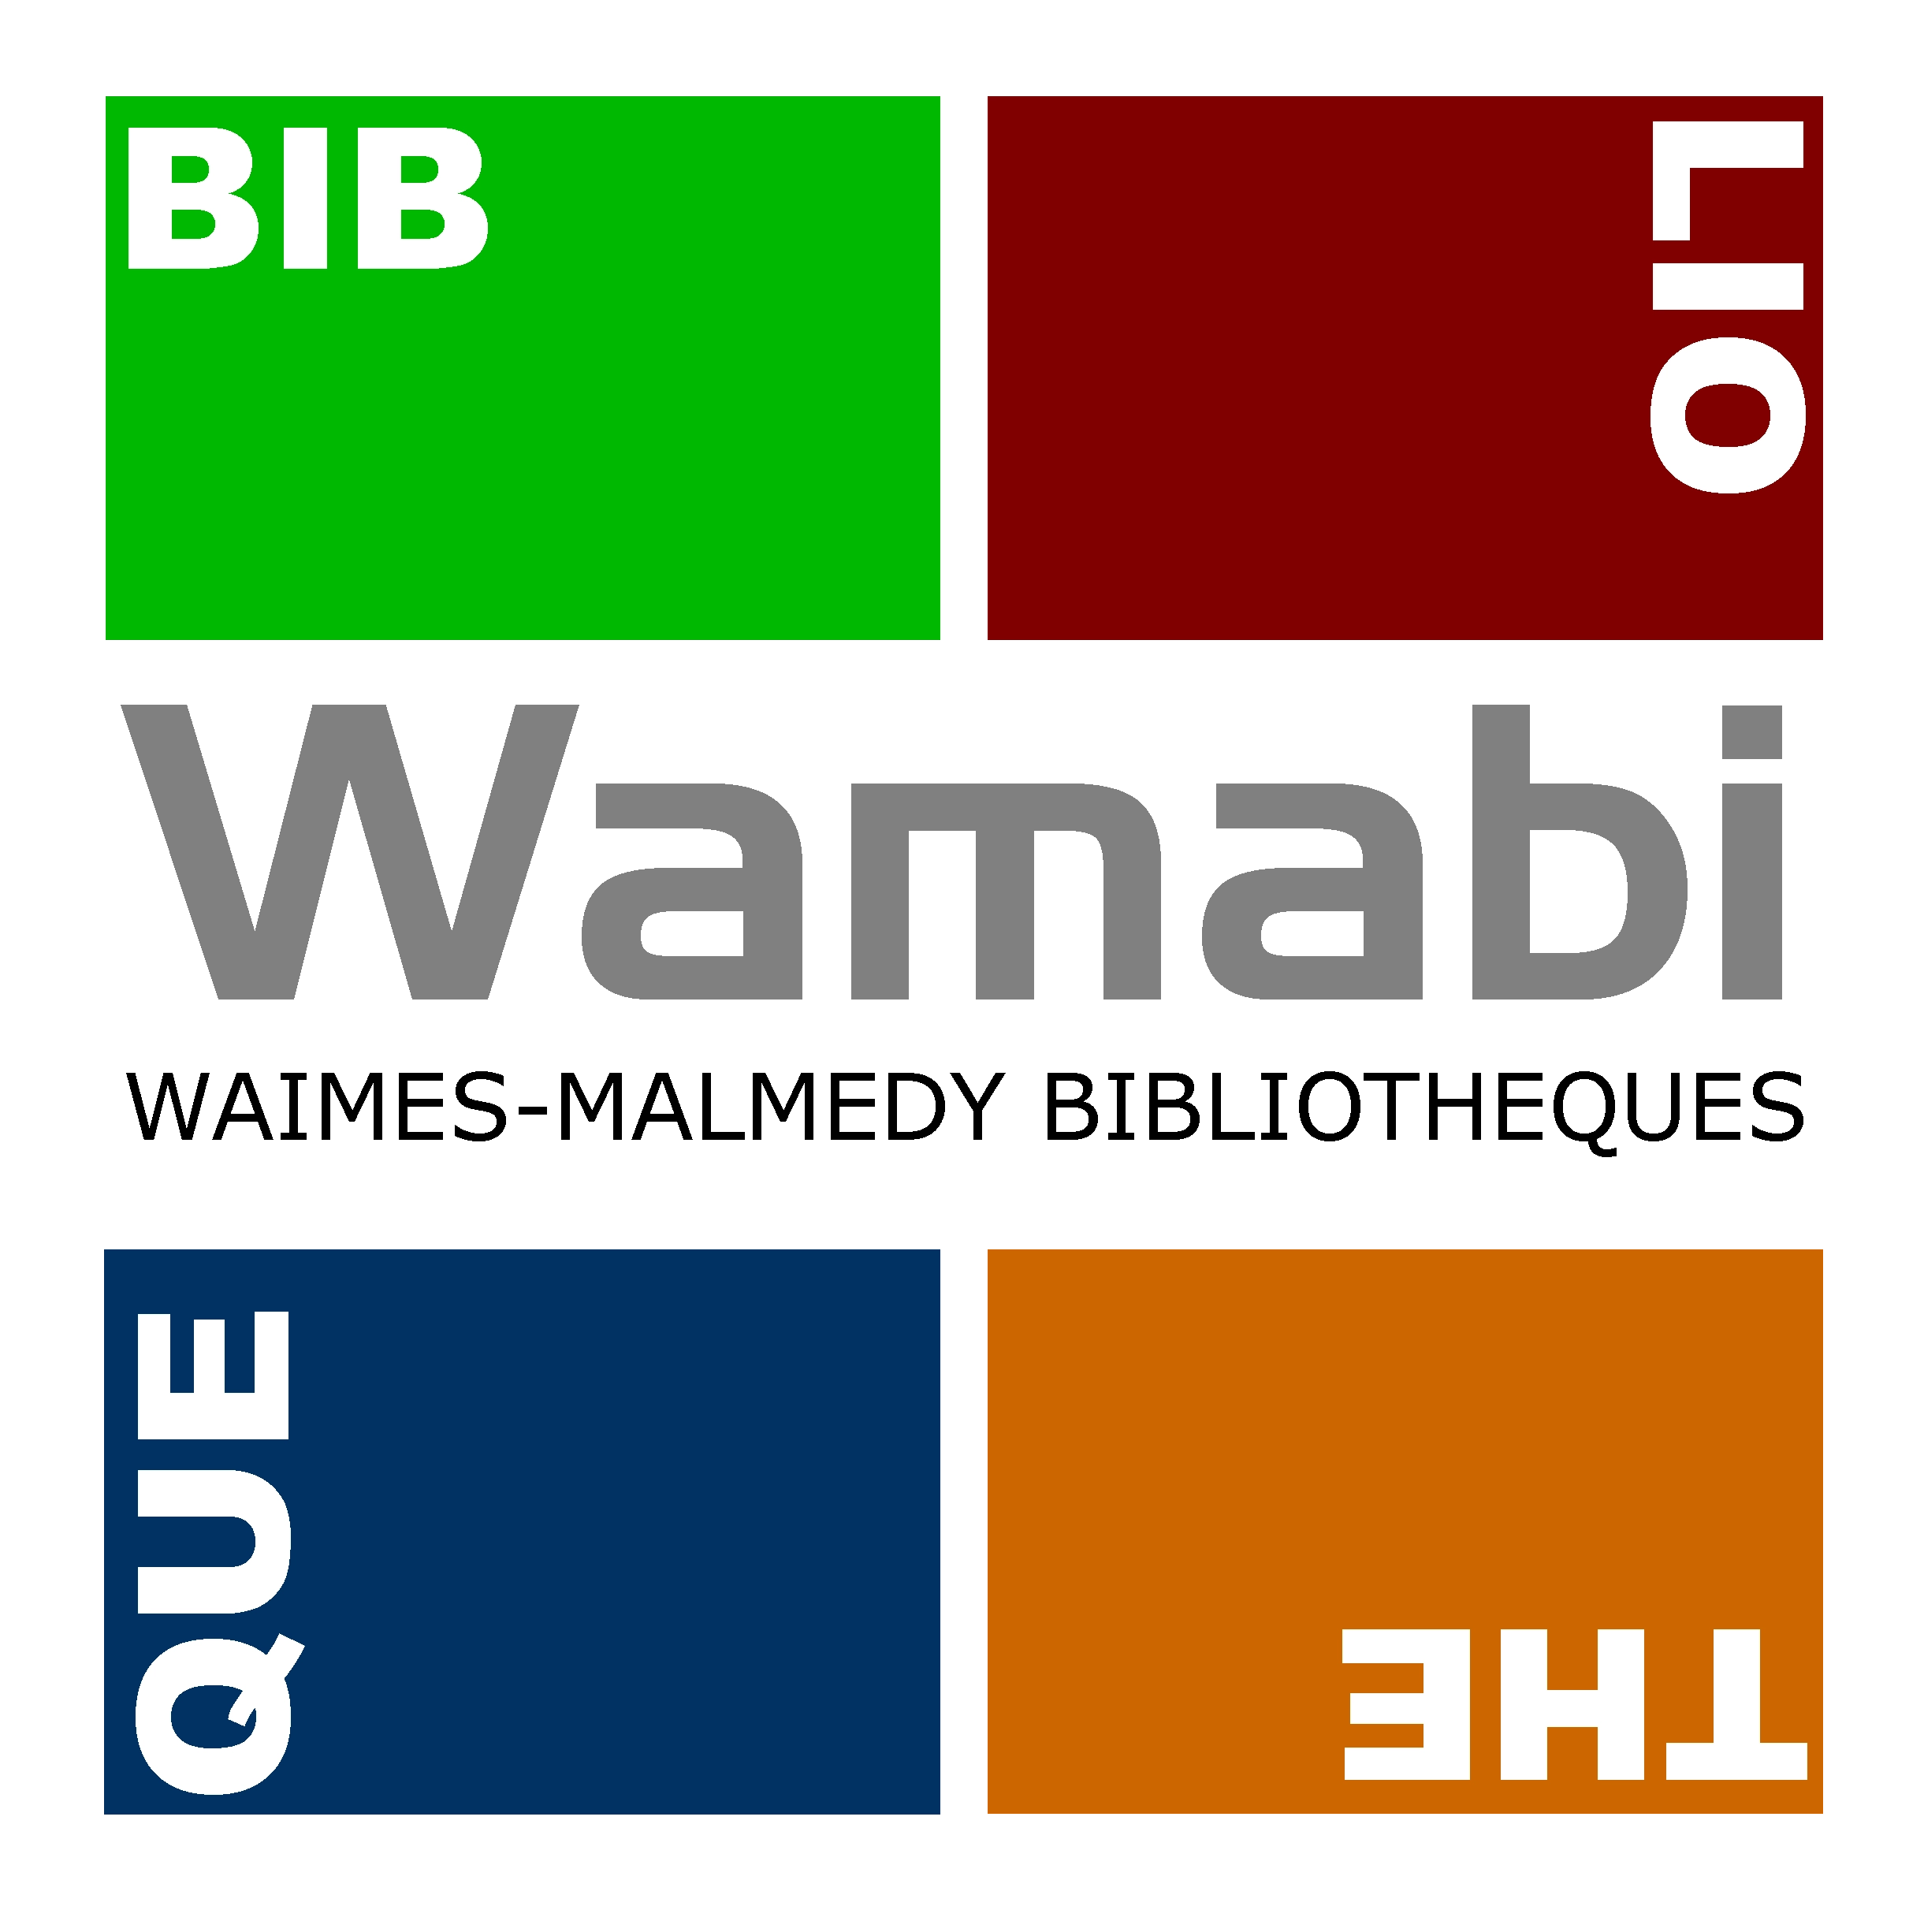 Wamabi – Bibliothèques de Waimes et de Malmedy